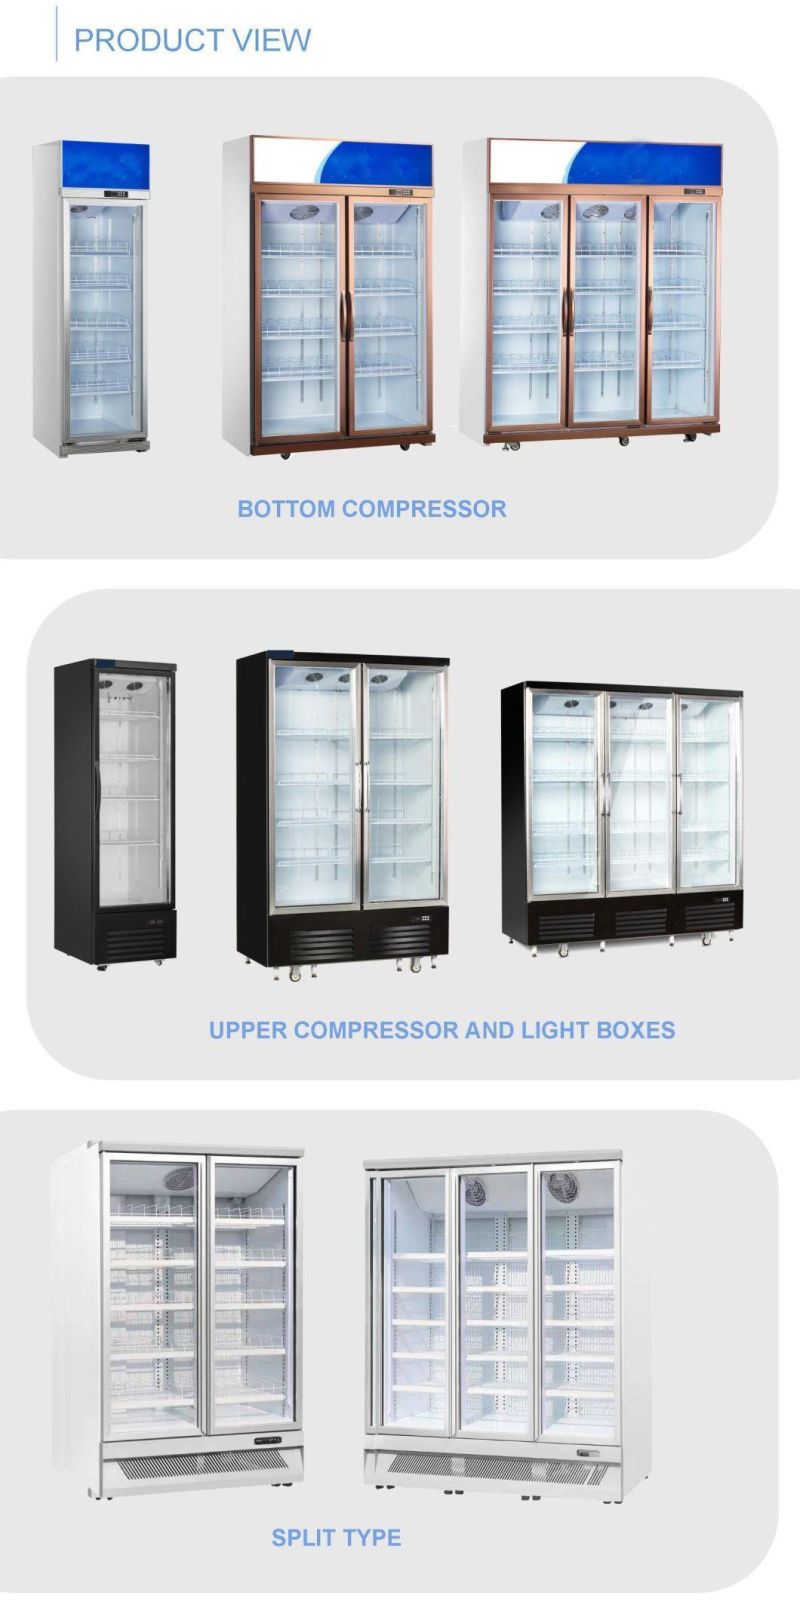 201-600L Glass Door Commercial Refrigeration Beverage Display Fridge Cabinet for Supermarket